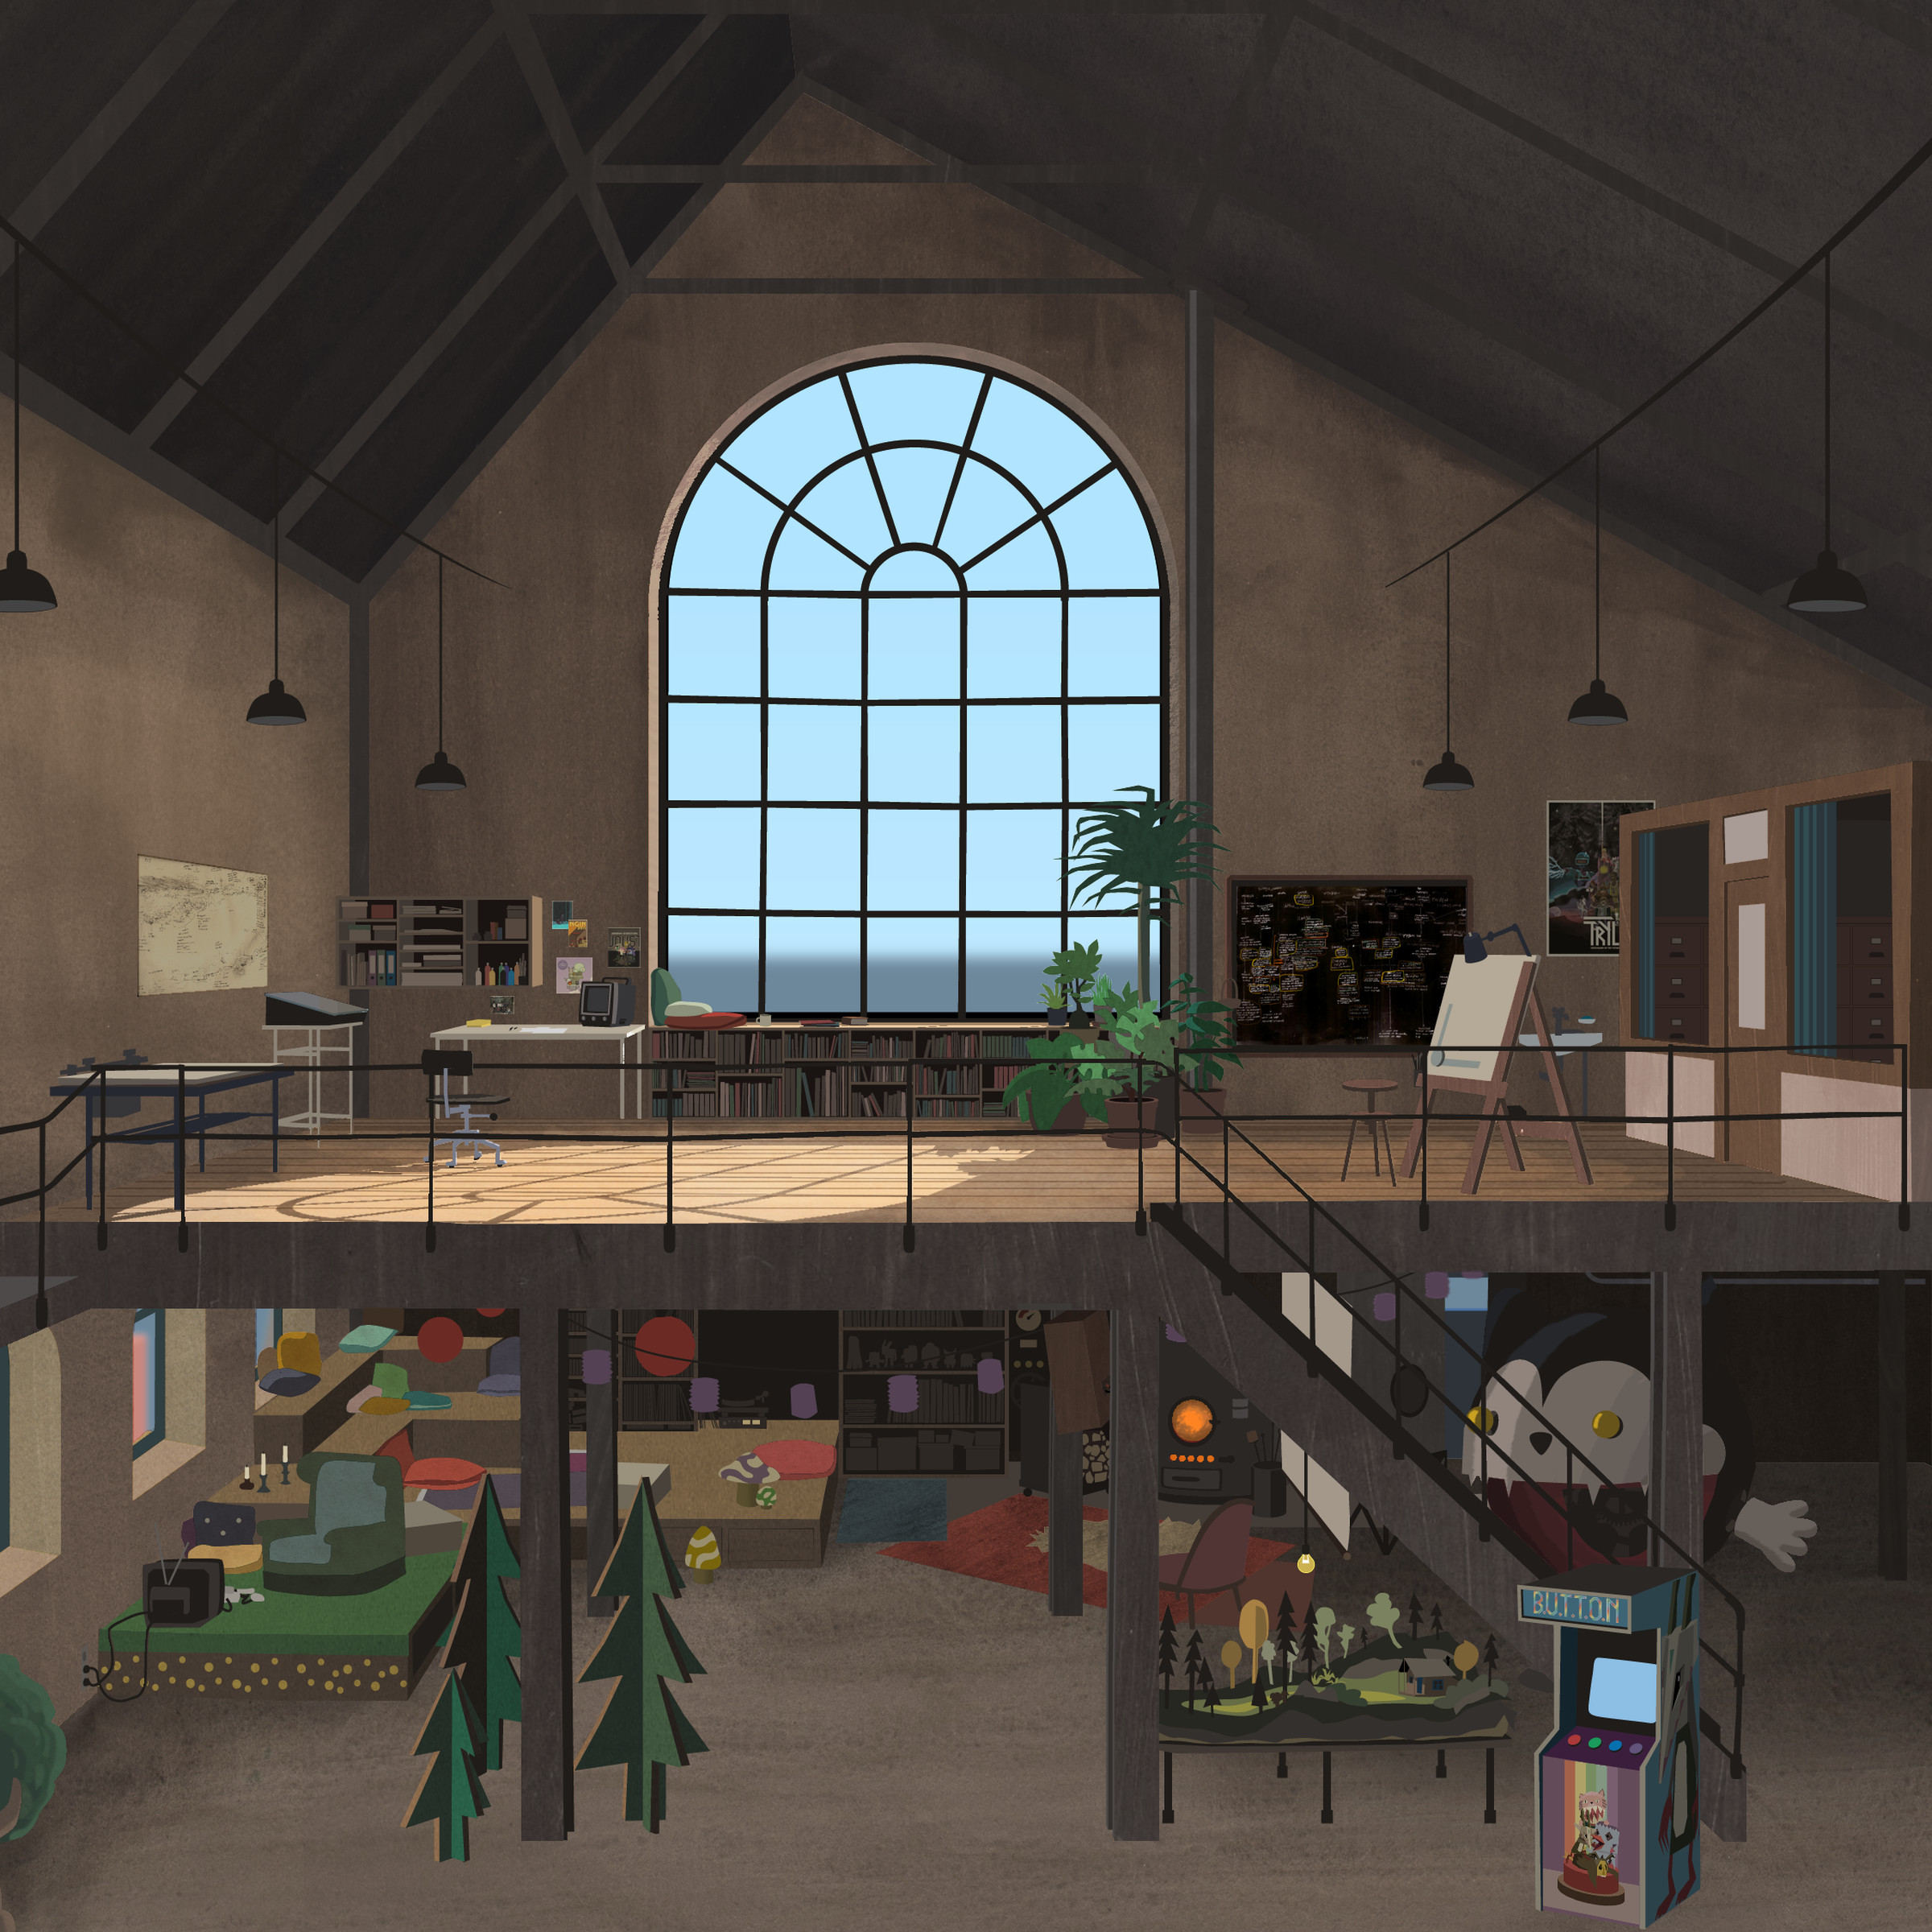 An illustration of Die Gute Fabrik’s studio space.